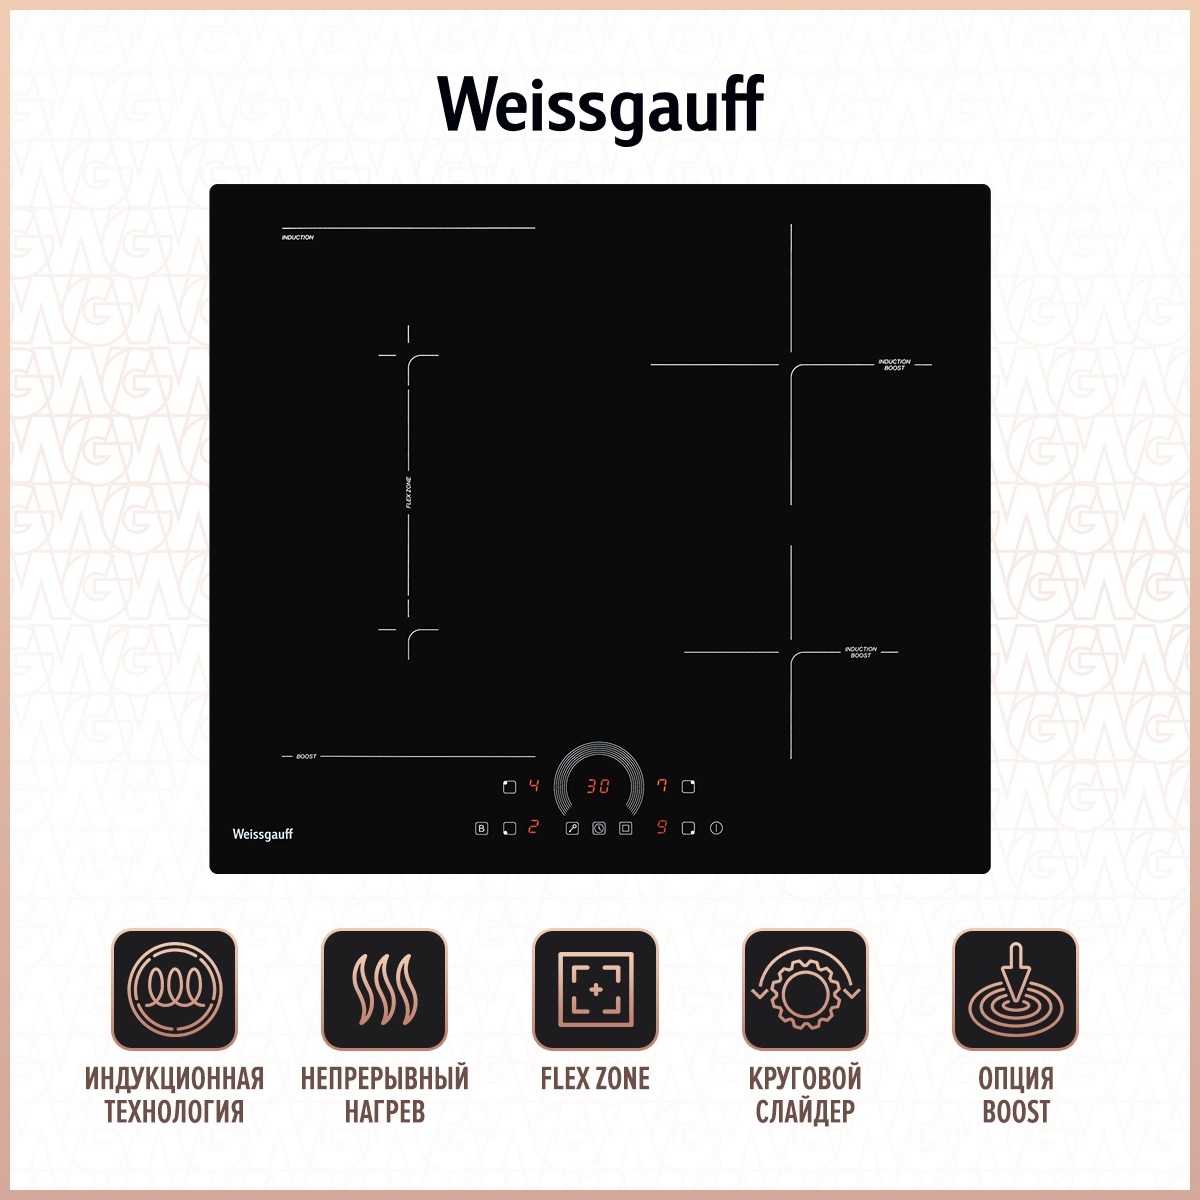 Встраиваемая варочная панель индукционная Weissgauff HI 643 BFZC черный встраиваемая варочная панель индукционная weissgauff hi 643 bfzc